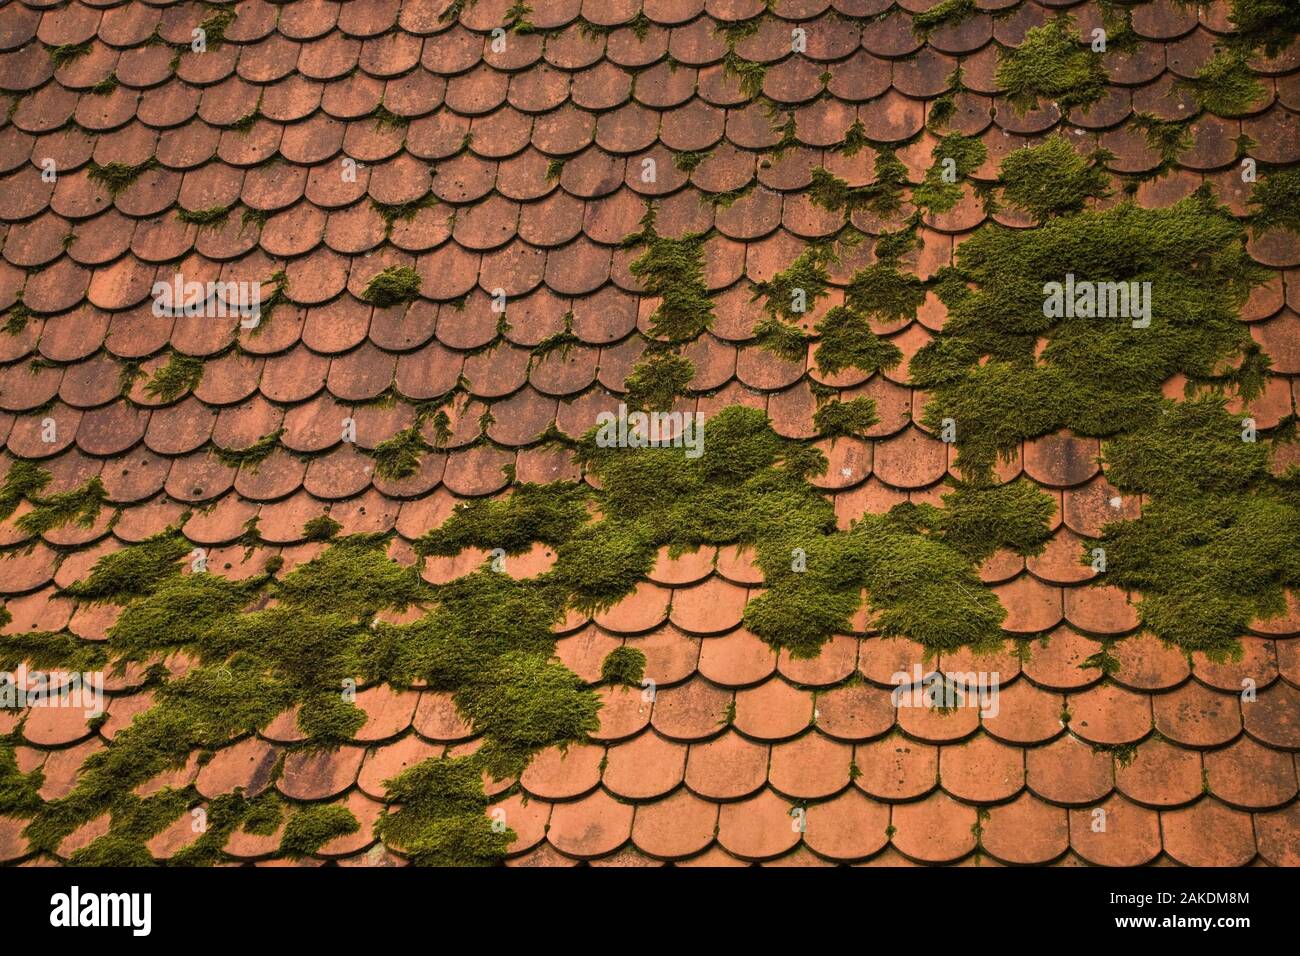 Bryophyta - musgo verde creciendo sobre techos de tejas de terracota. Foto de stock